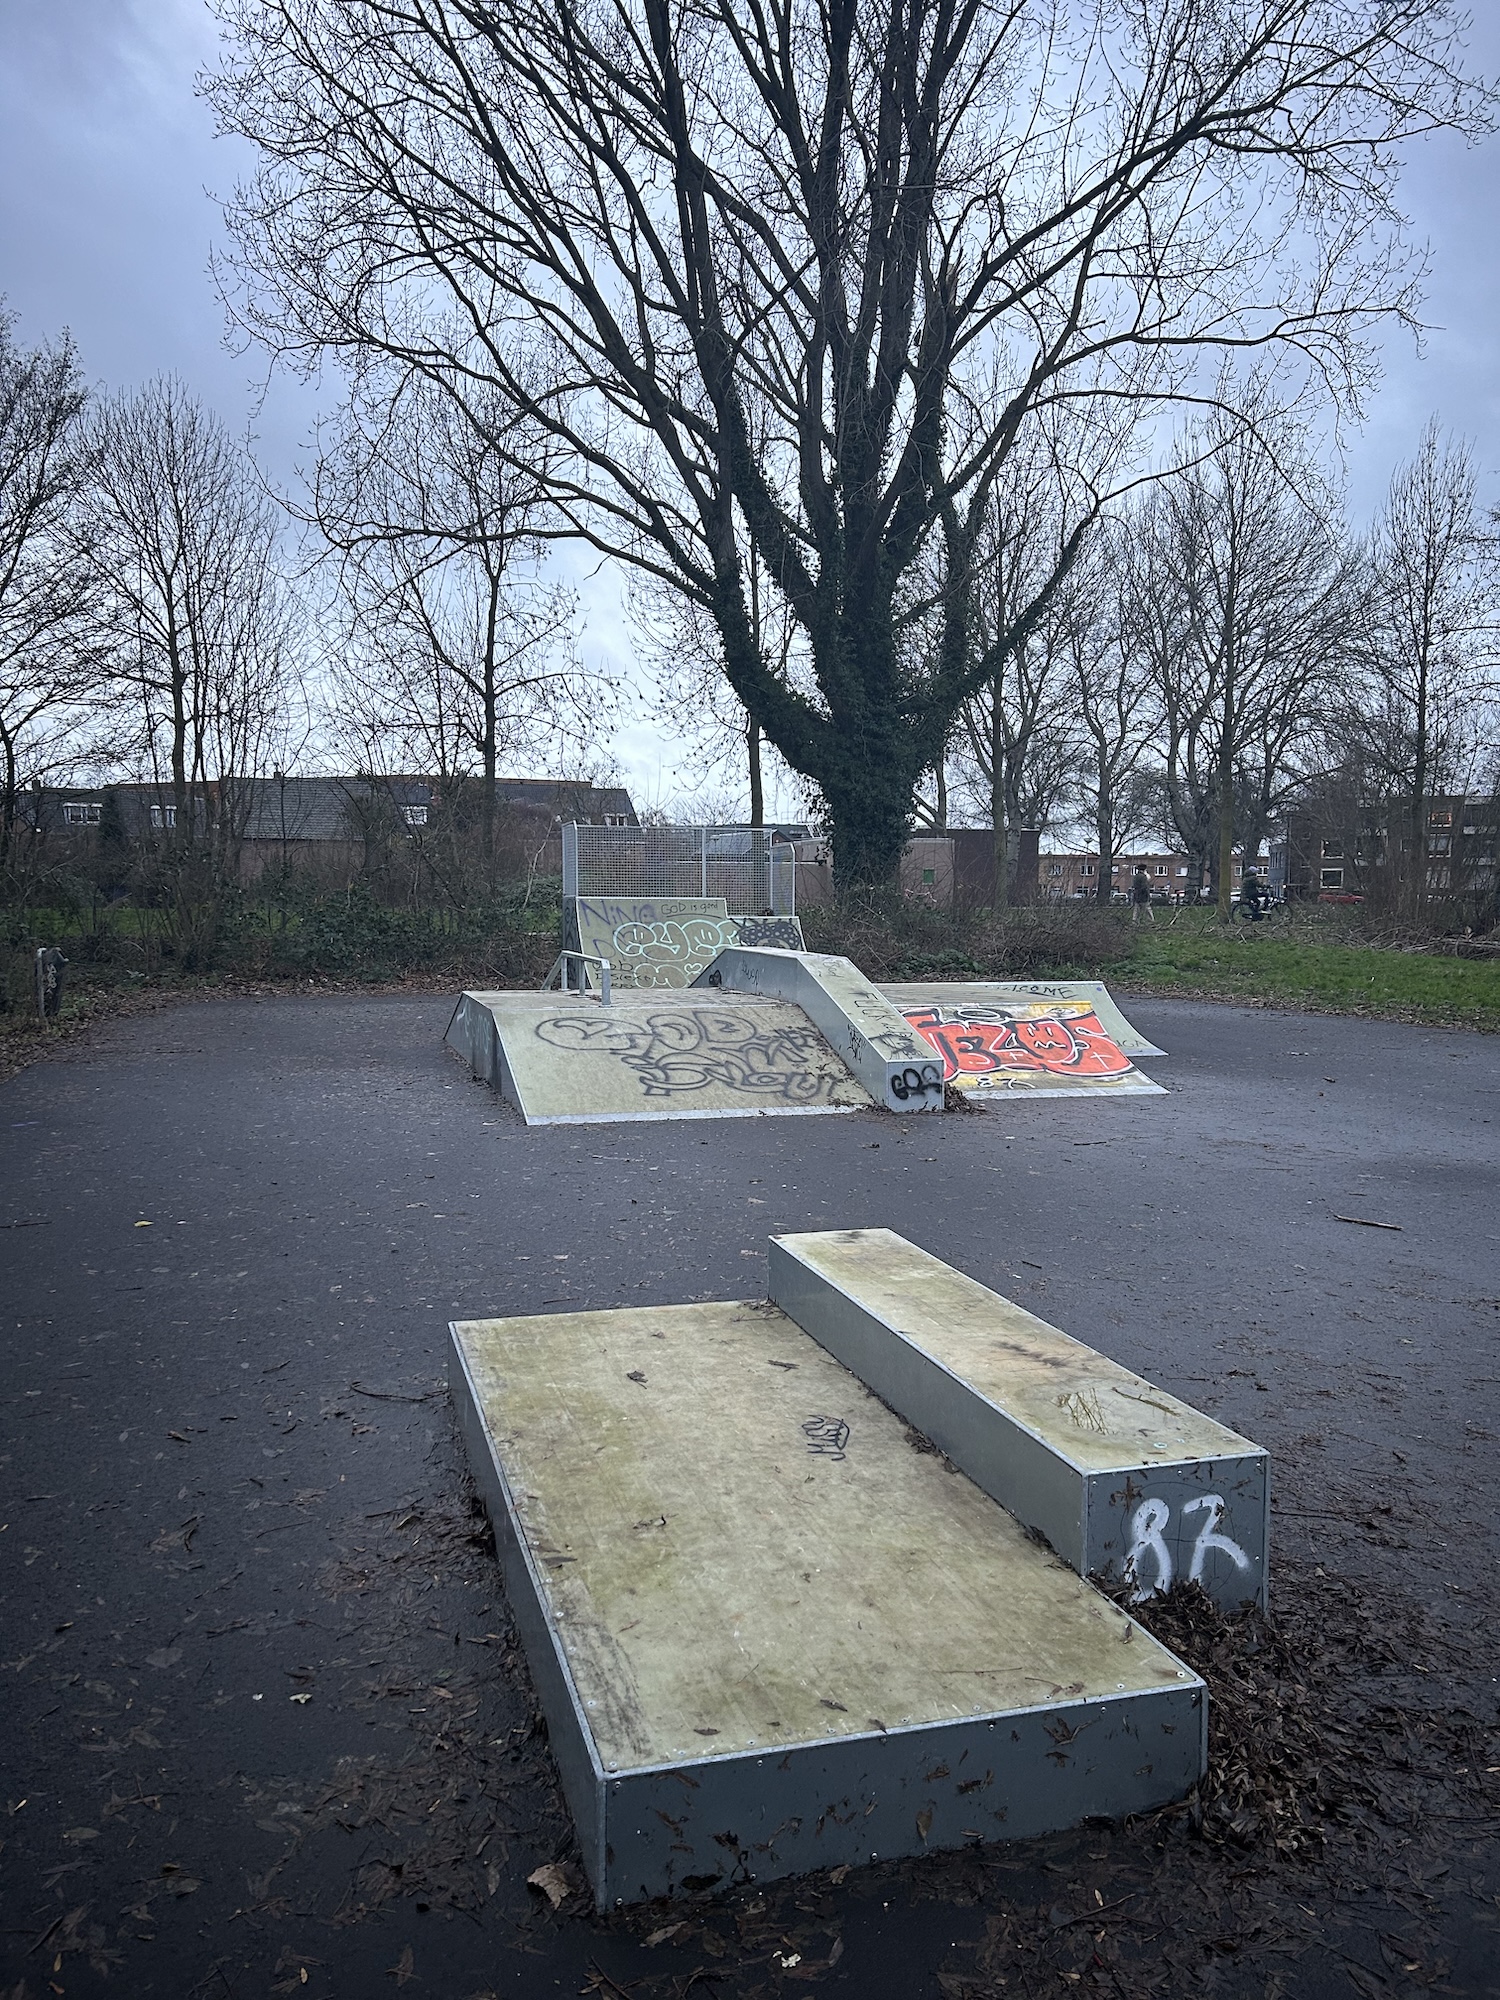 Boeimeer Skatepark